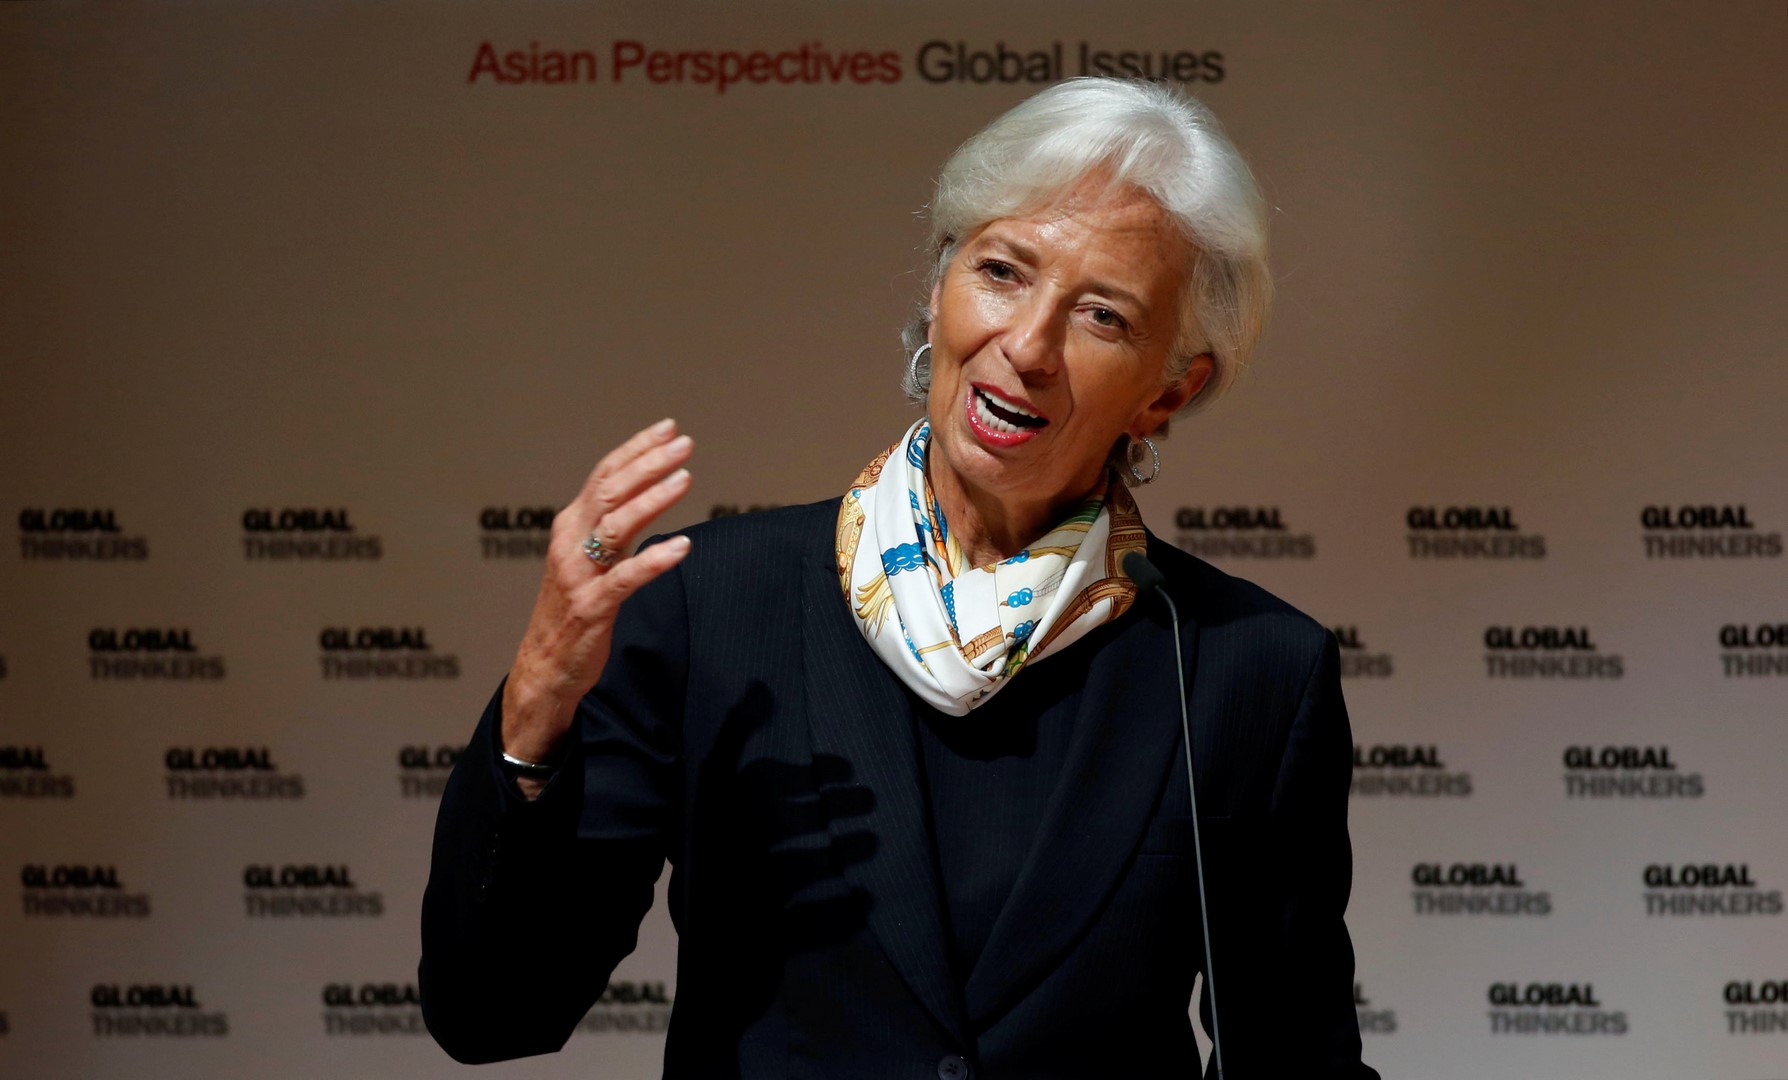 Christine Lagarde pide apartarse del proteccionismo y reforzar crecimiento a largo plazo